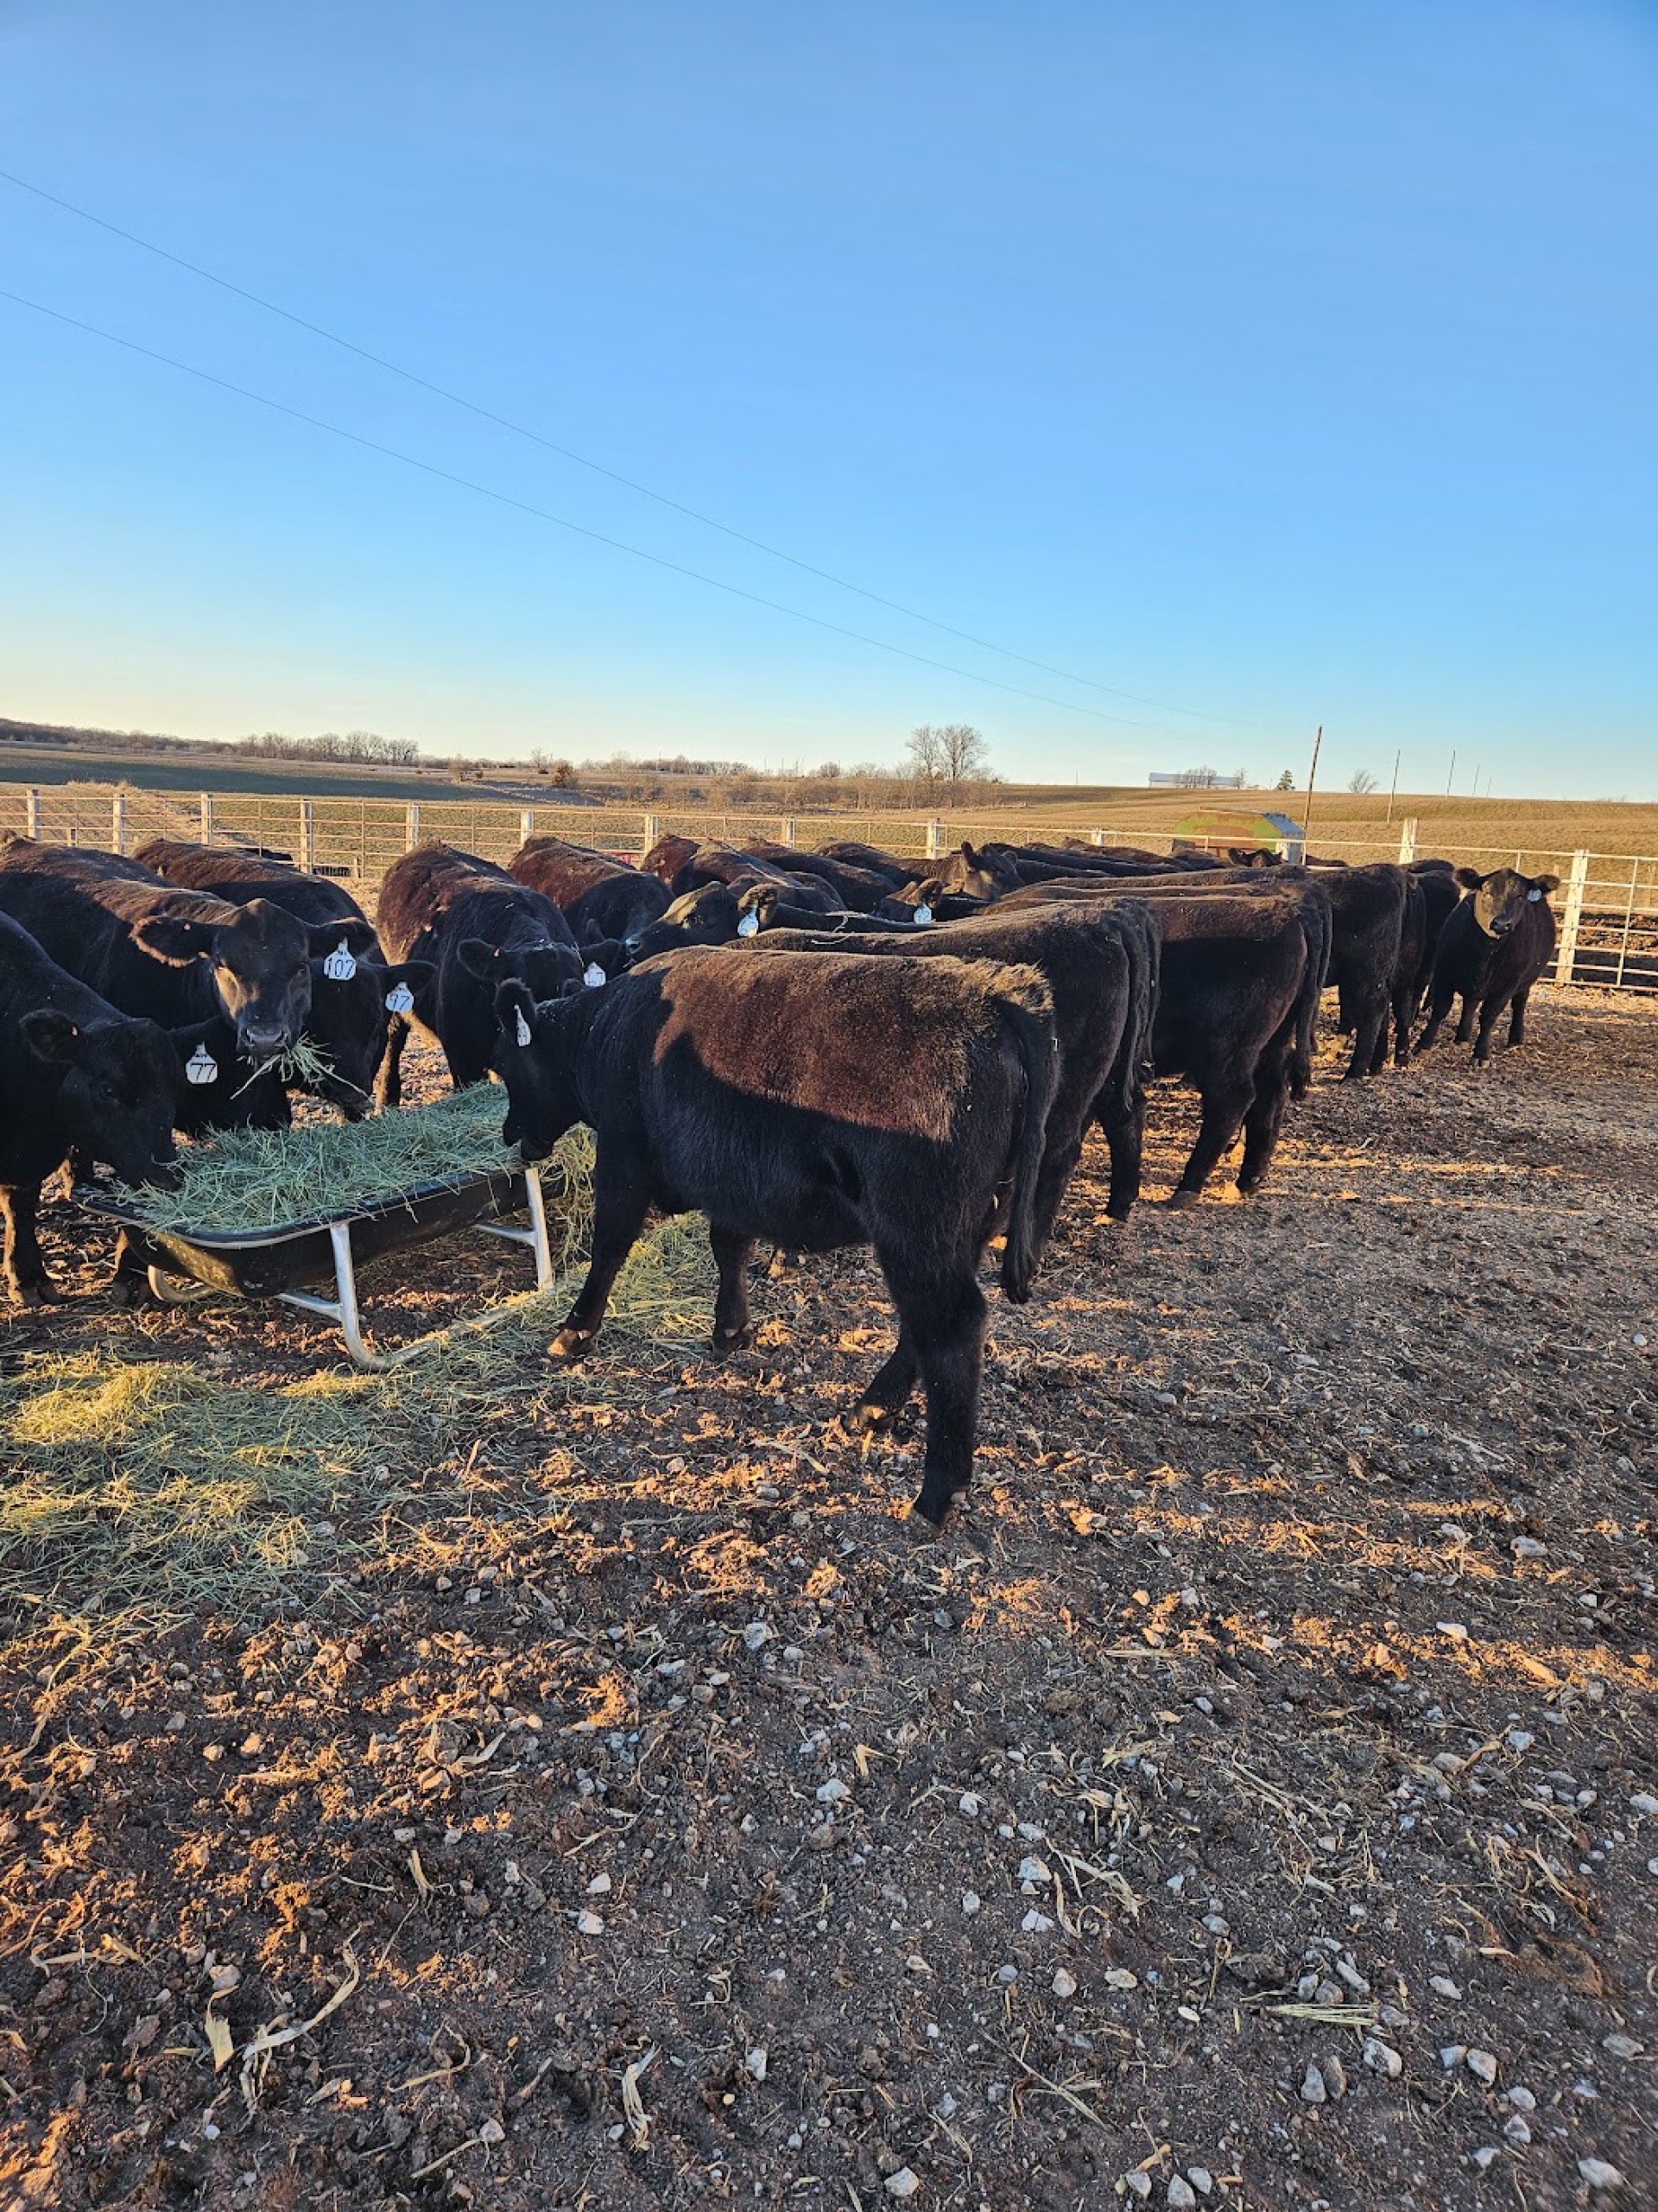 Black cows at a feeder trough